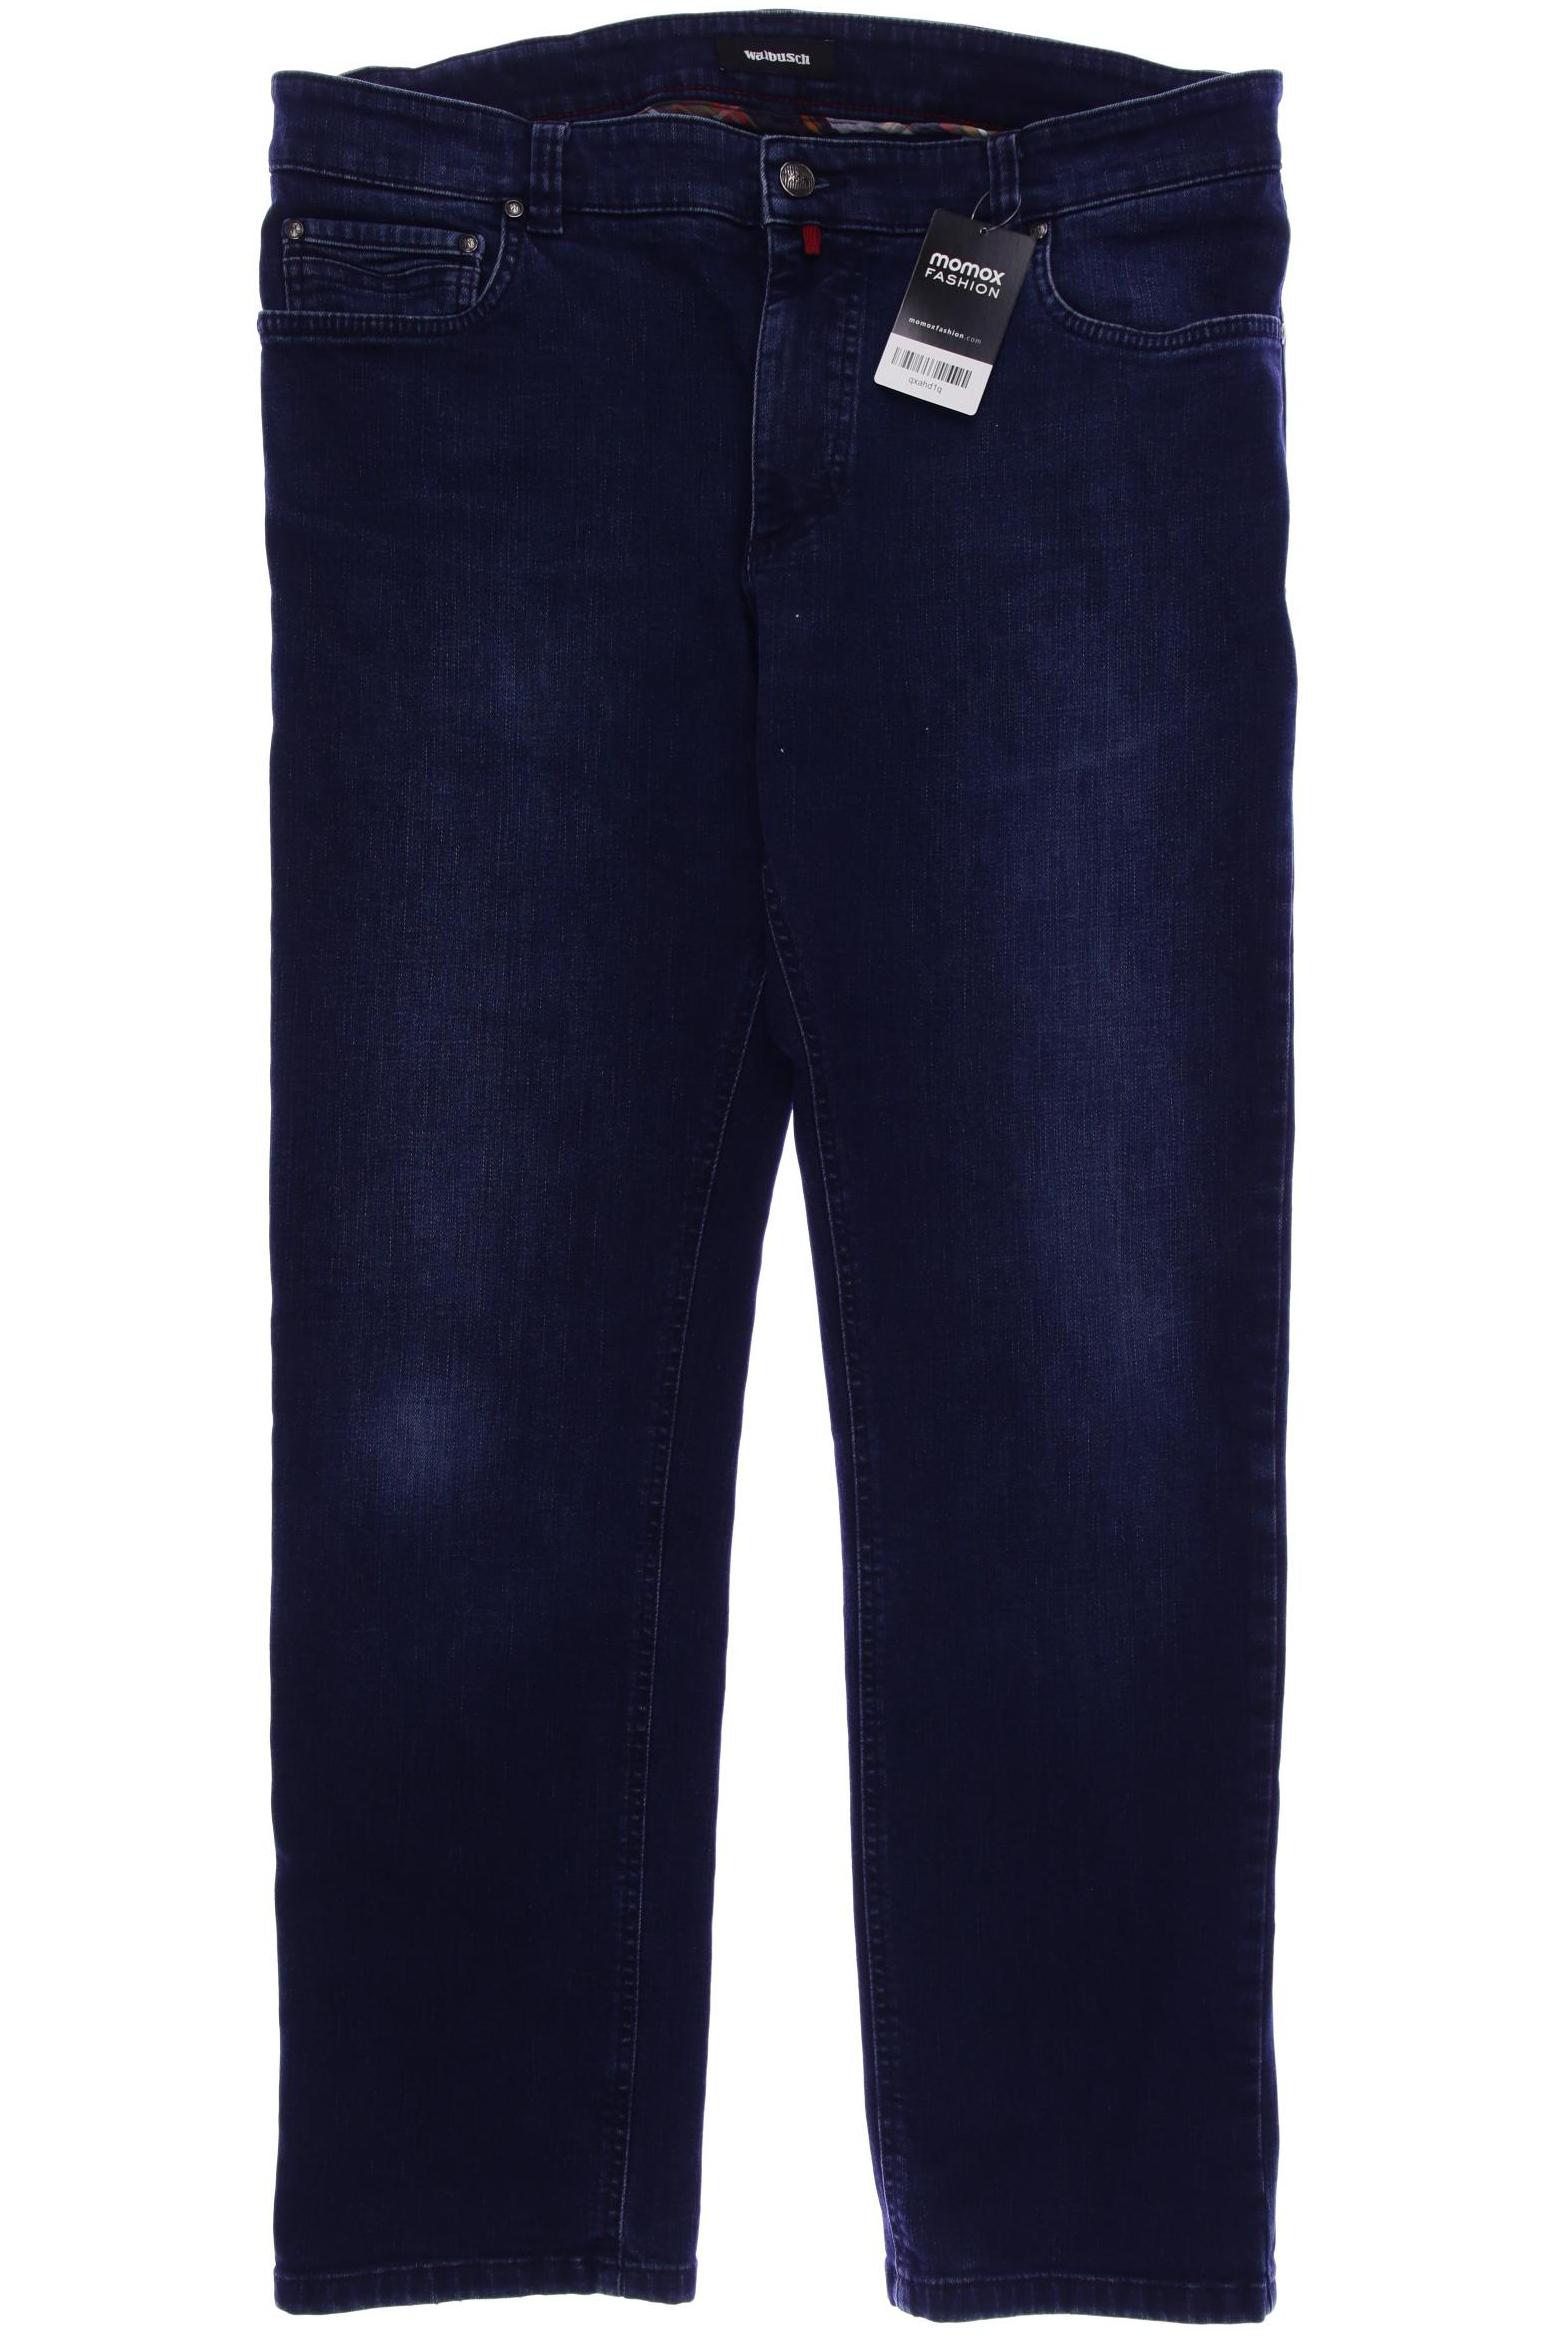 Walbusch Herren Jeans, marineblau von Walbusch